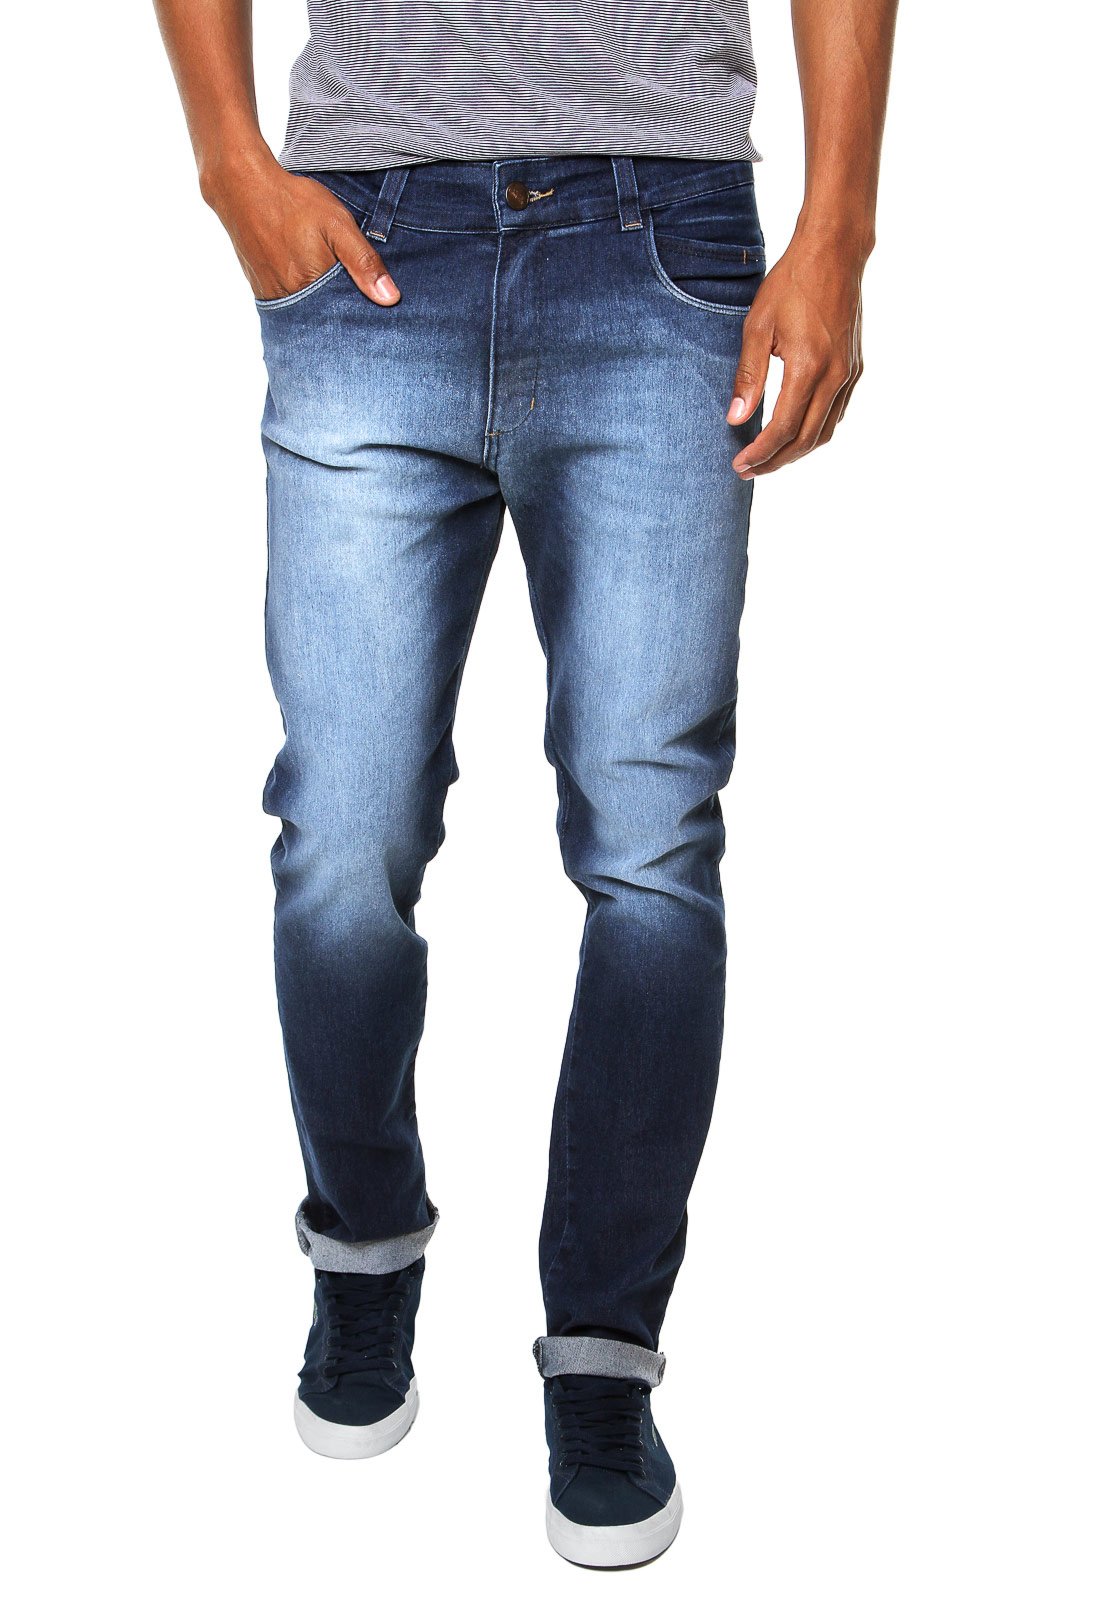 calça prs jeans masculino